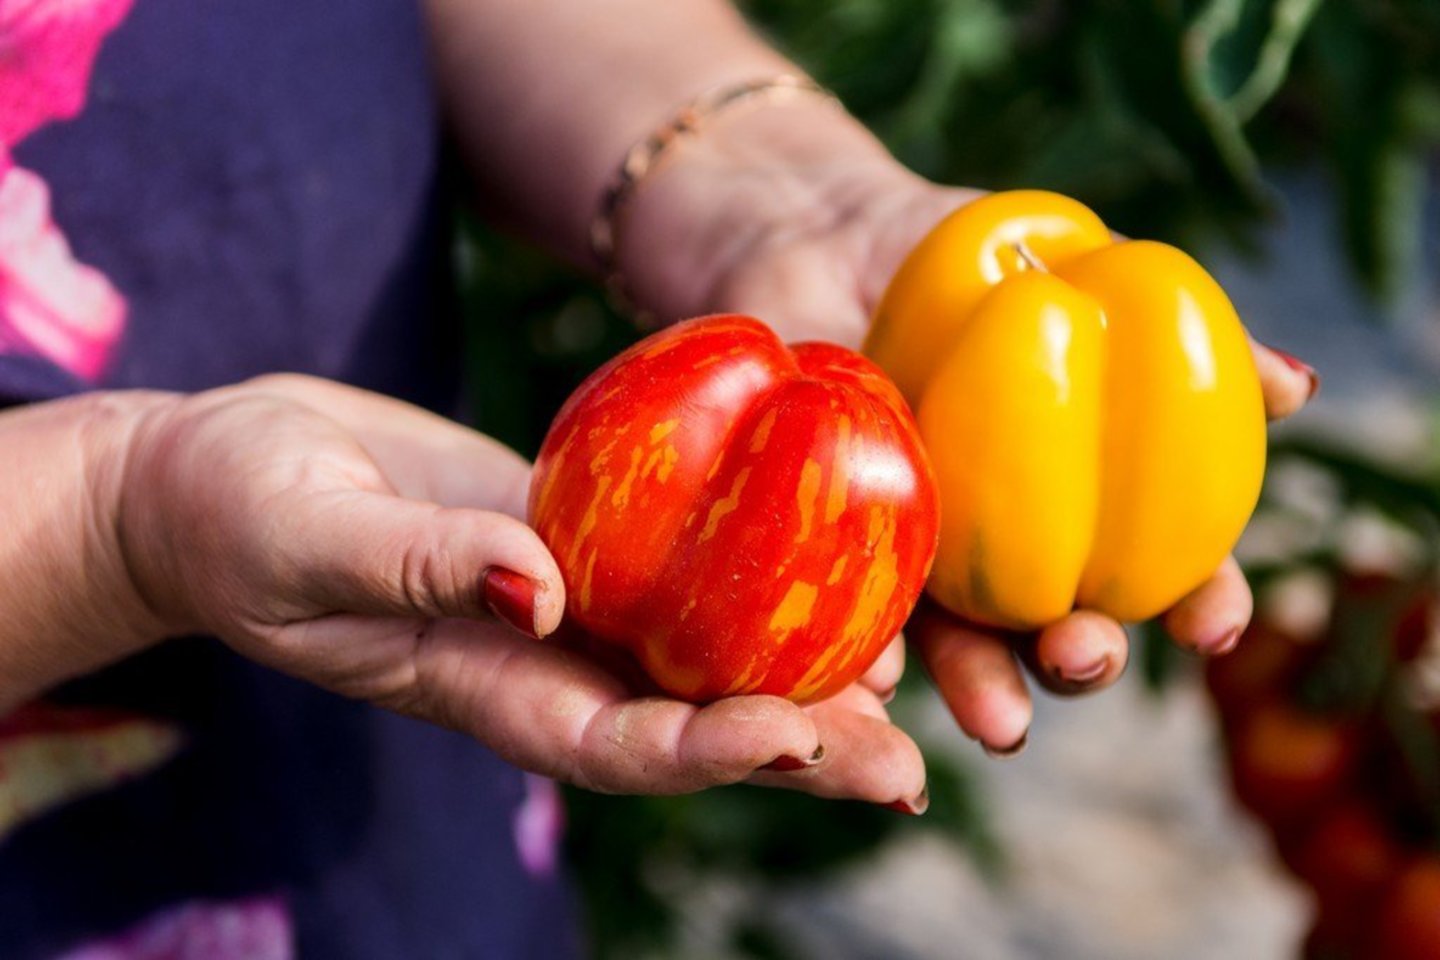 Netoli Ramygalos ūkį turinti Salvina Kievinienė gali be perstojo kalbėti apie pomidorus, kurių moters šiltadaržiuose šiais metais yra net 80 rūšių – hibridinių ir veislinių.<br>R. Ančerevičiaus nuotr.